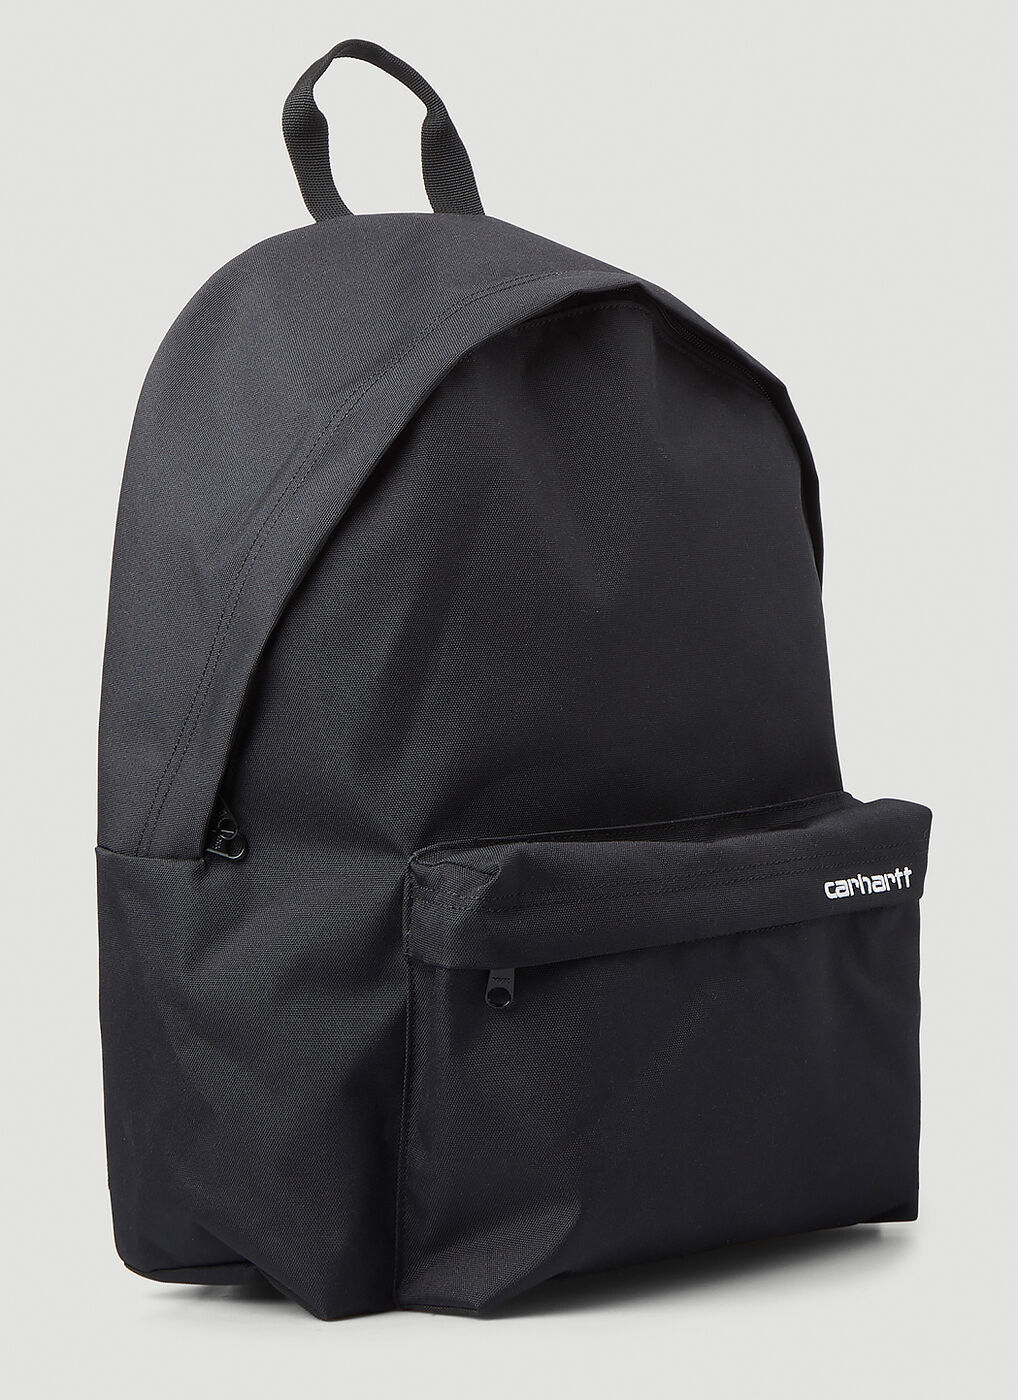 Payton Backpack in Black Carhartt WIP